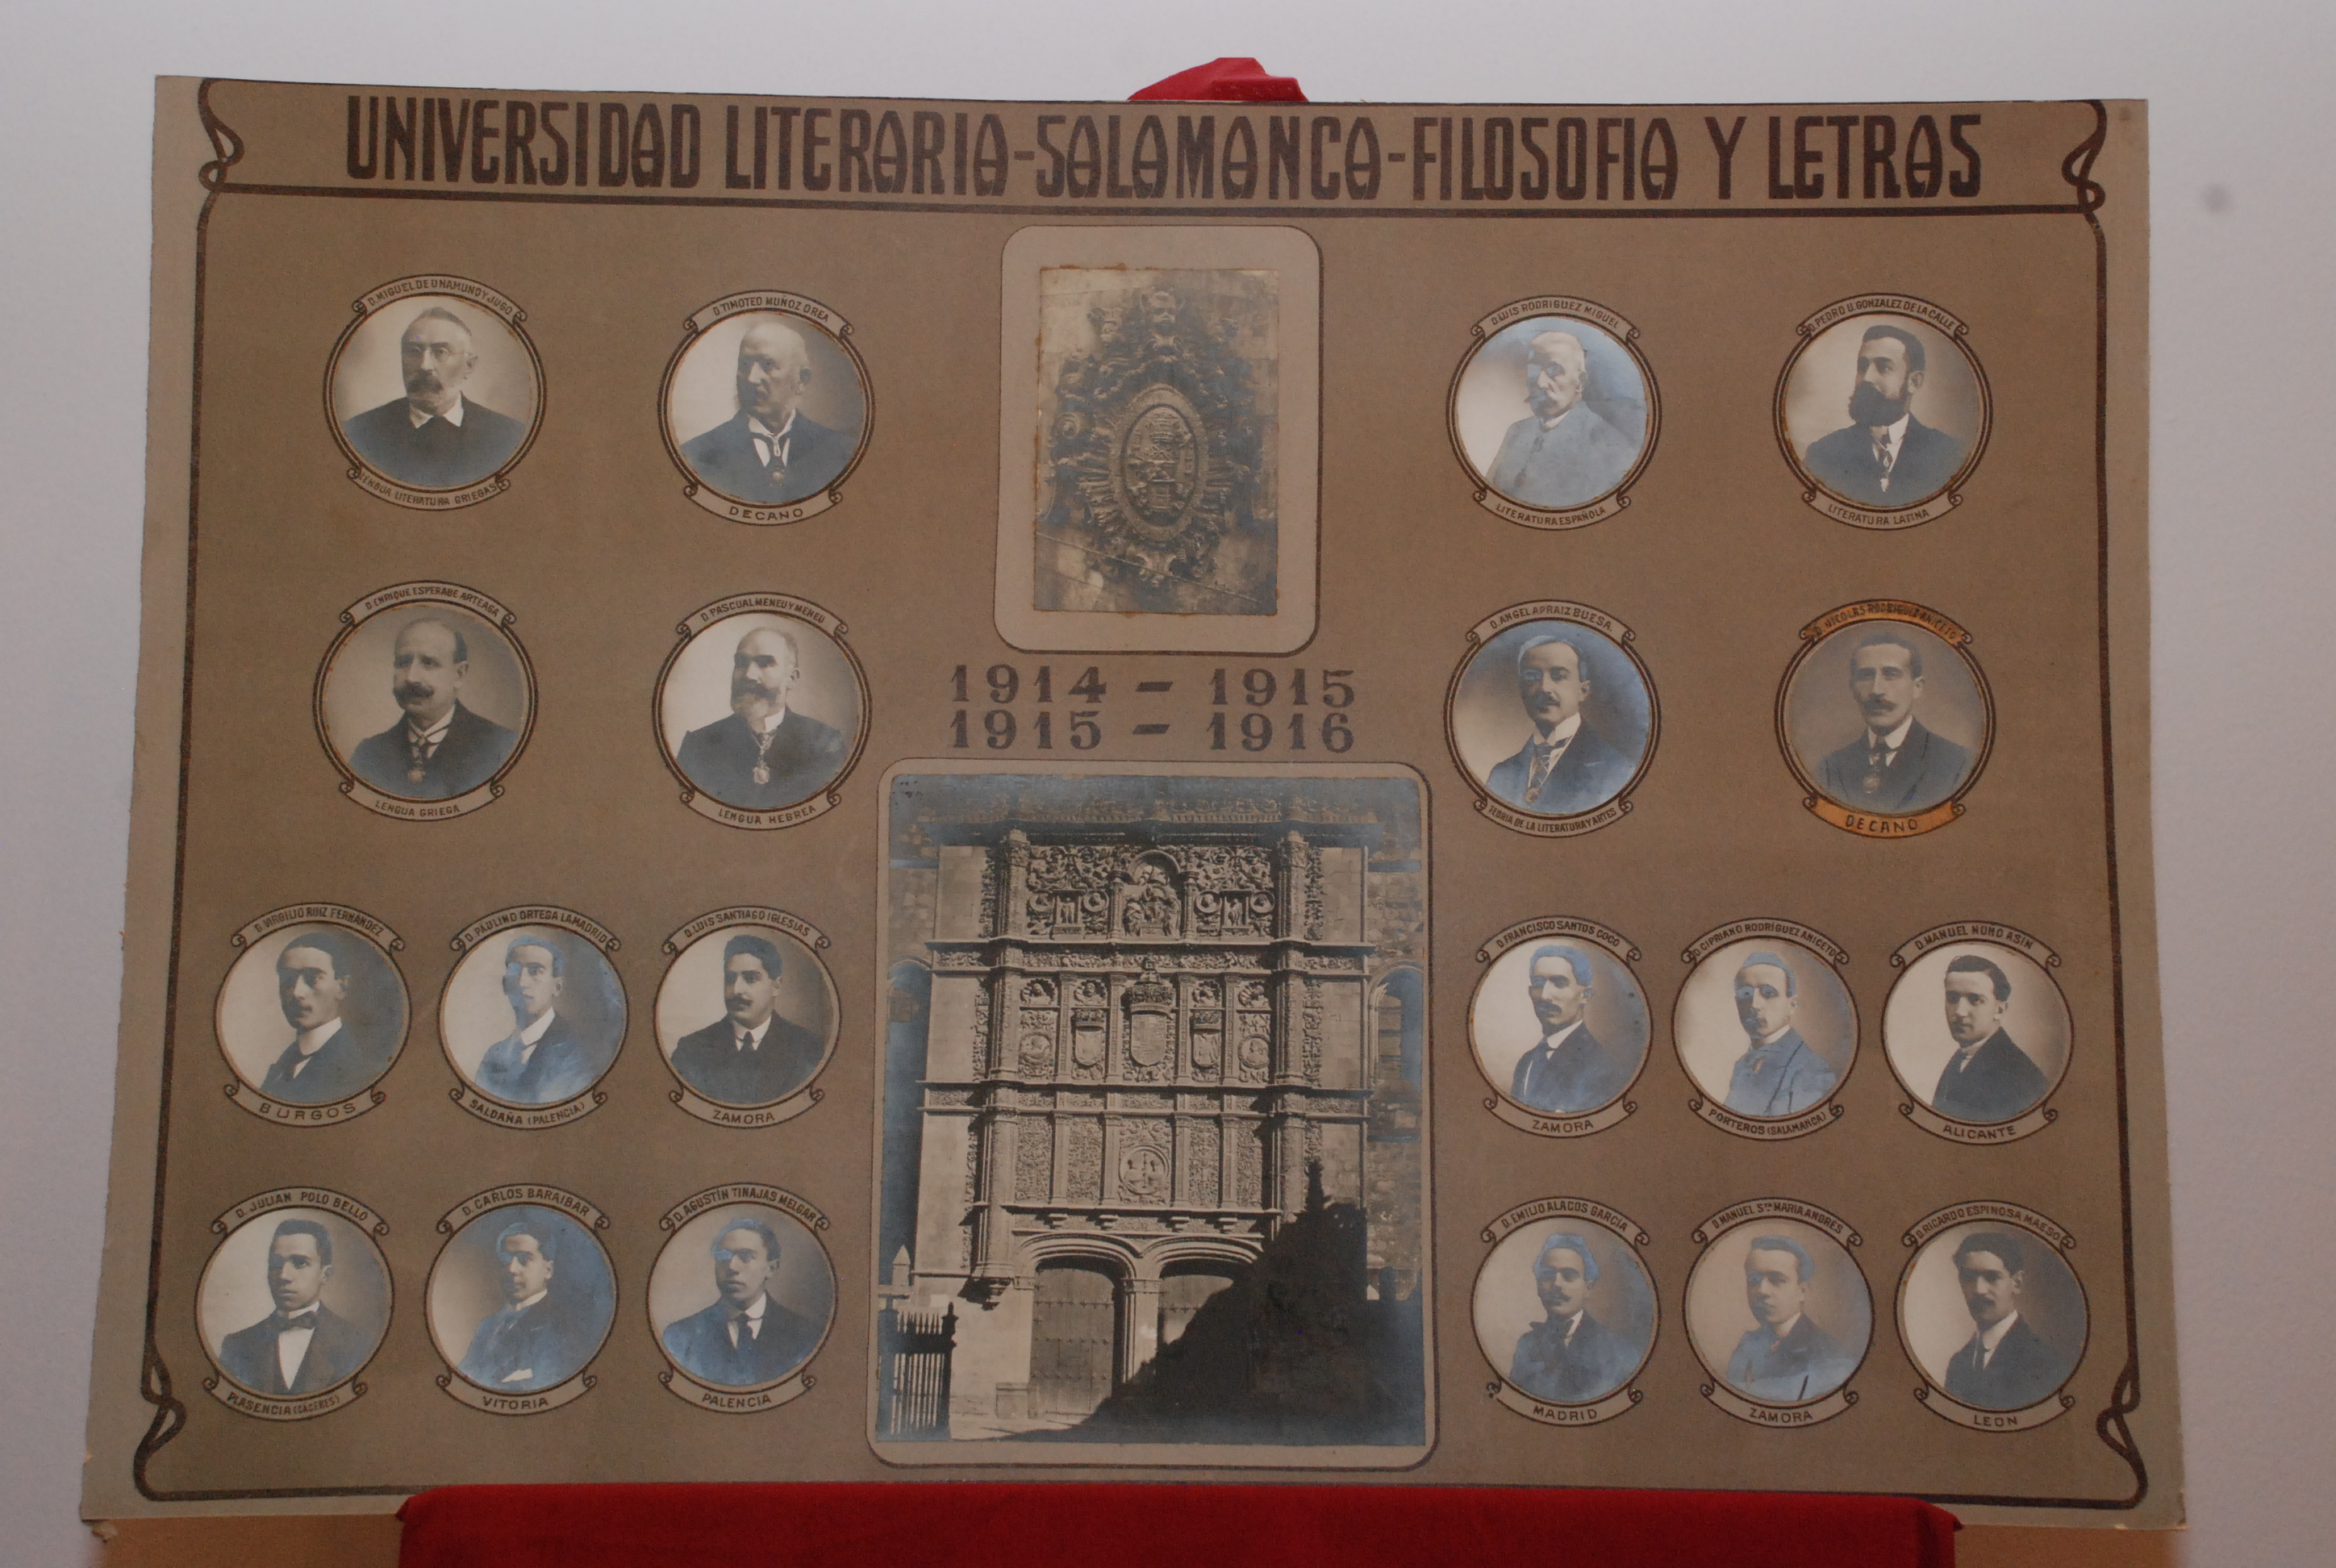 La Casa Museo Unamuno recibe una orla universitaria de principios del siglo XX en la que figura Miguel de Unamuno